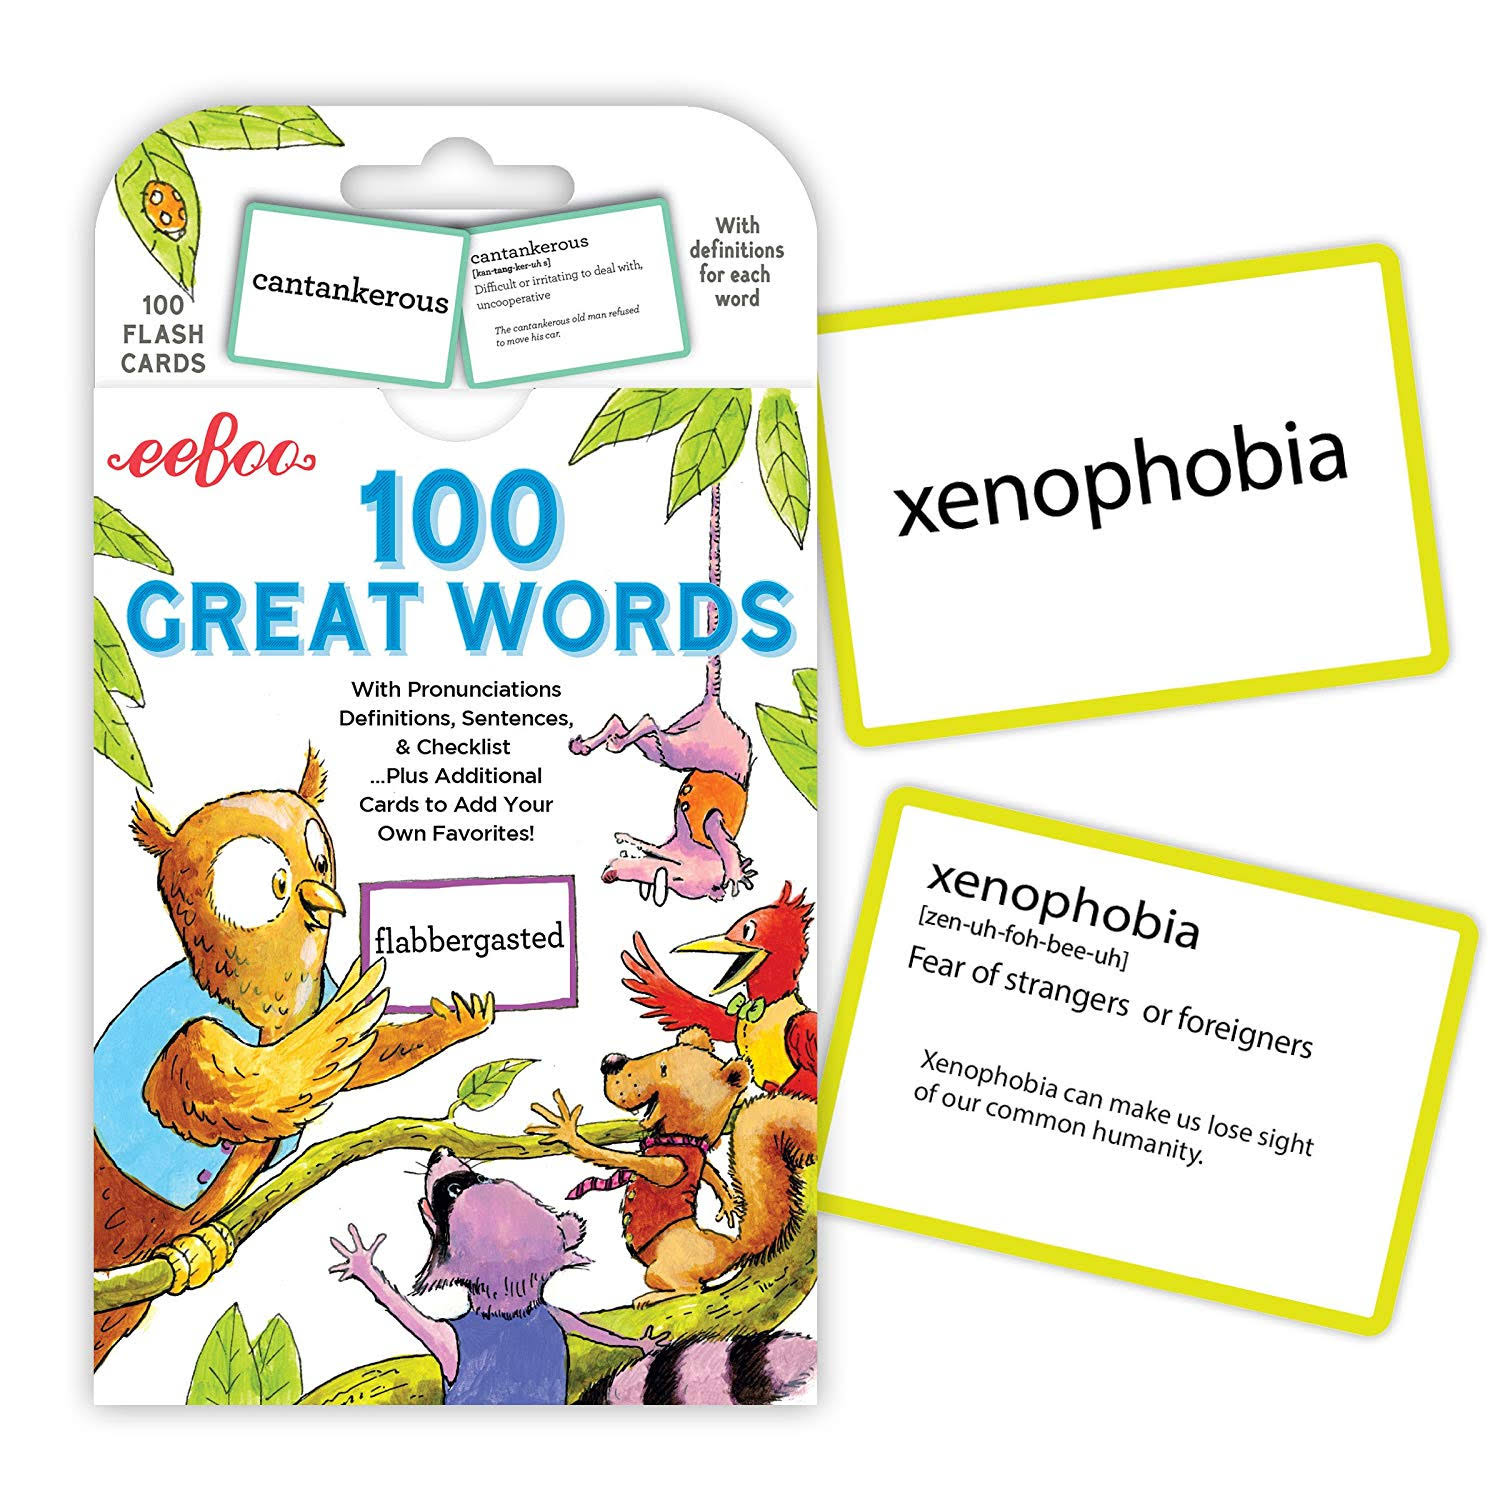 eeBoo Flash Cards 100 Great Words